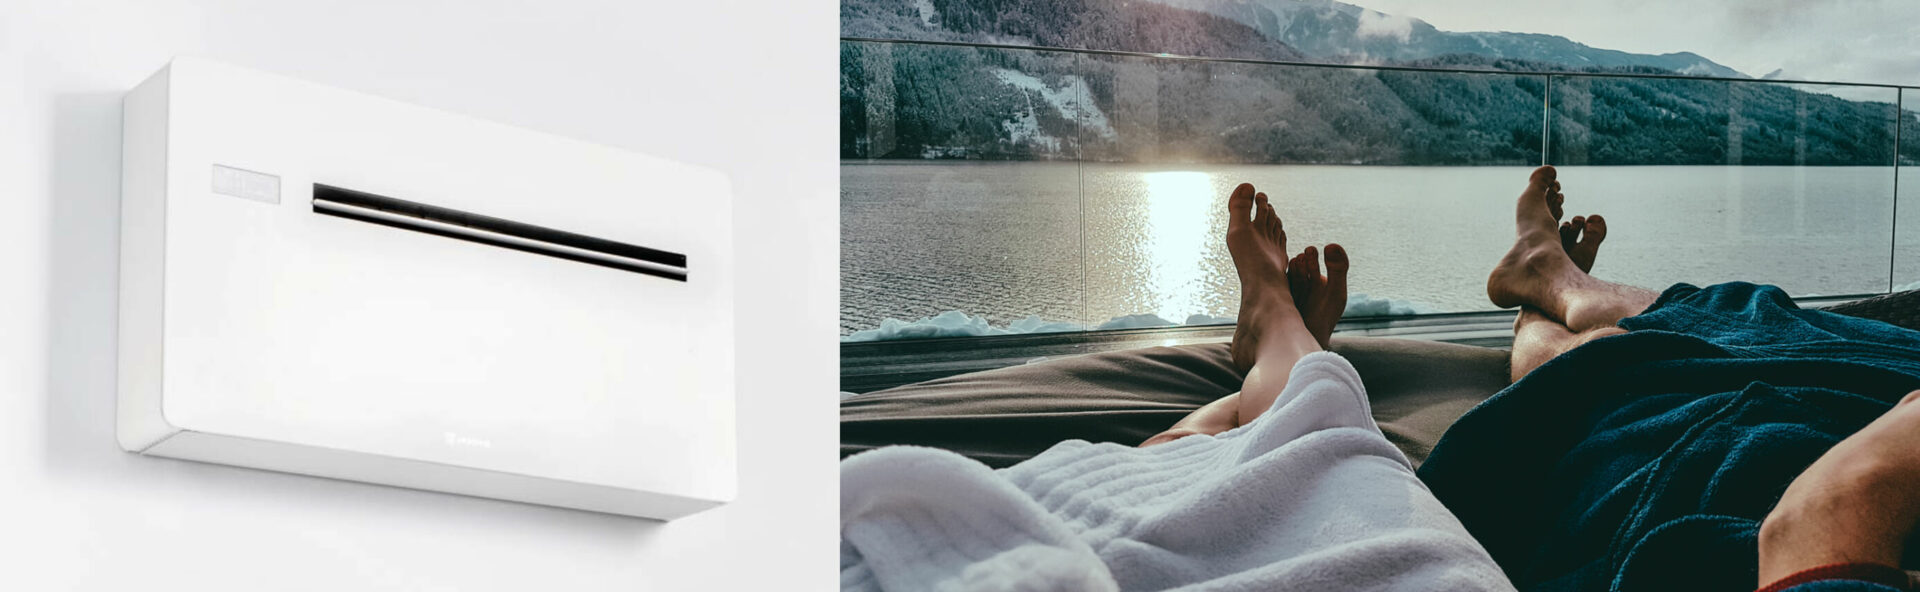 Raumluft24: Klimaanlage Hotelzimmer - Ehepaar und Klimaanlage